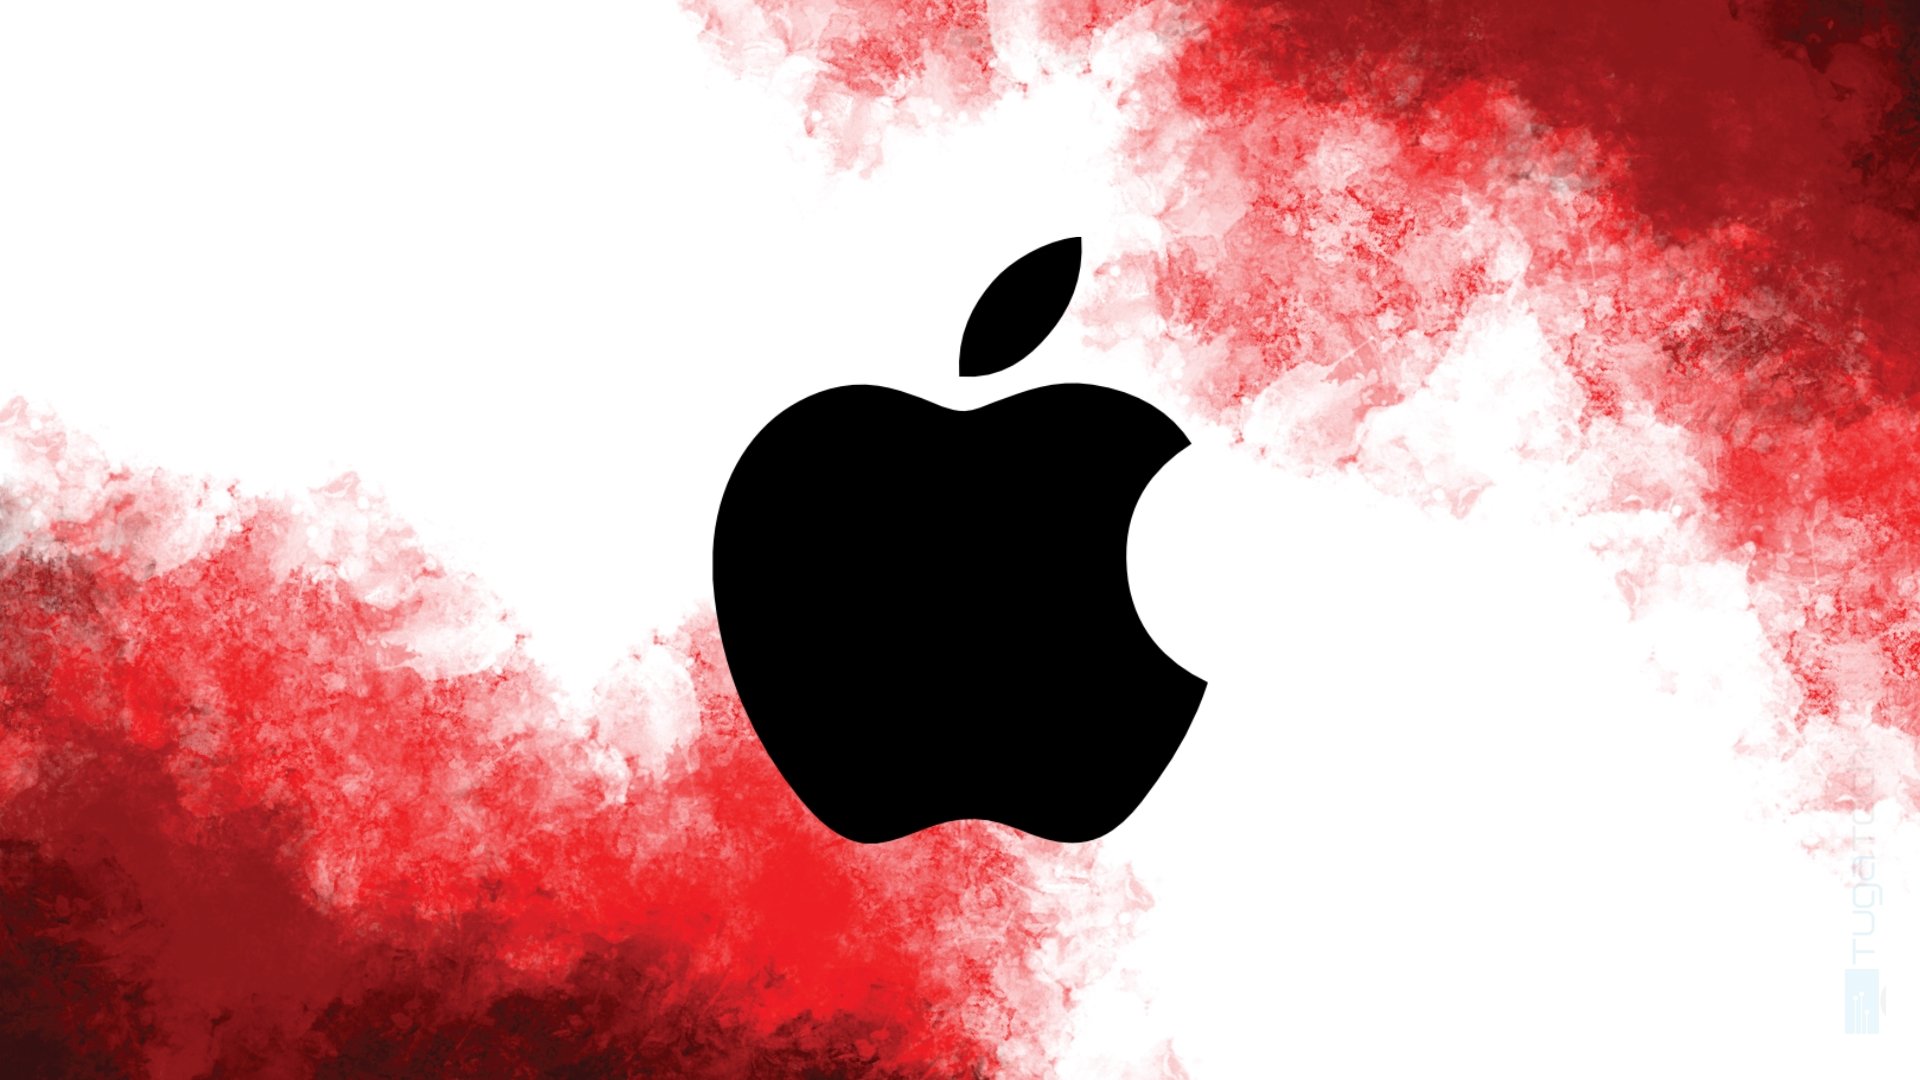 Logo da Apple em fundo vermelho